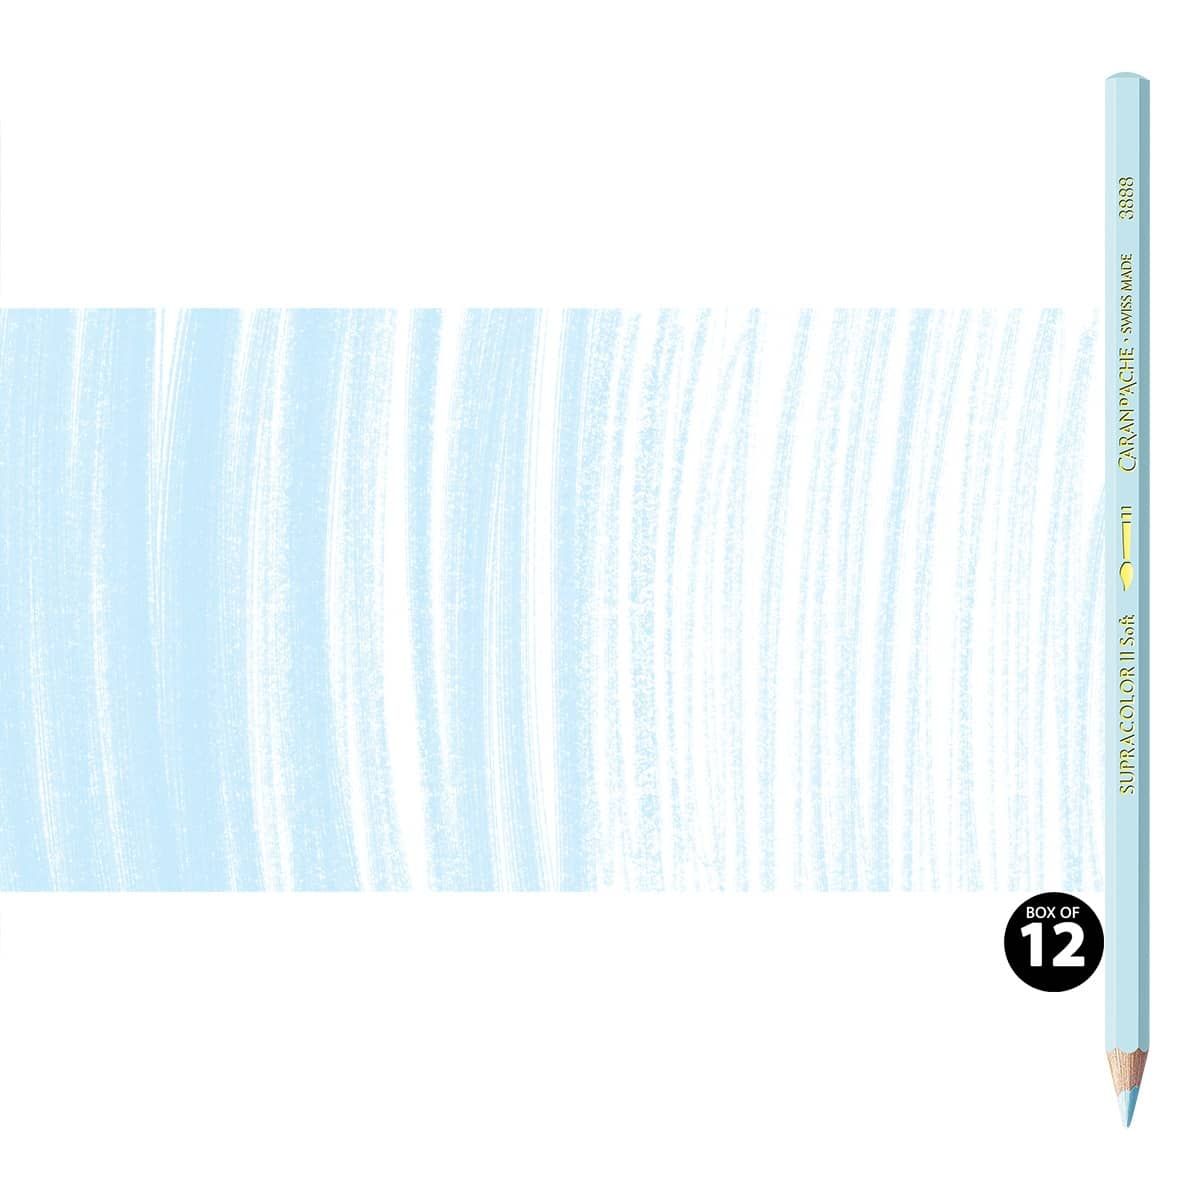 Supracolor II Watercolor Pencils Box of 12 No. 371 - Bluish Pale